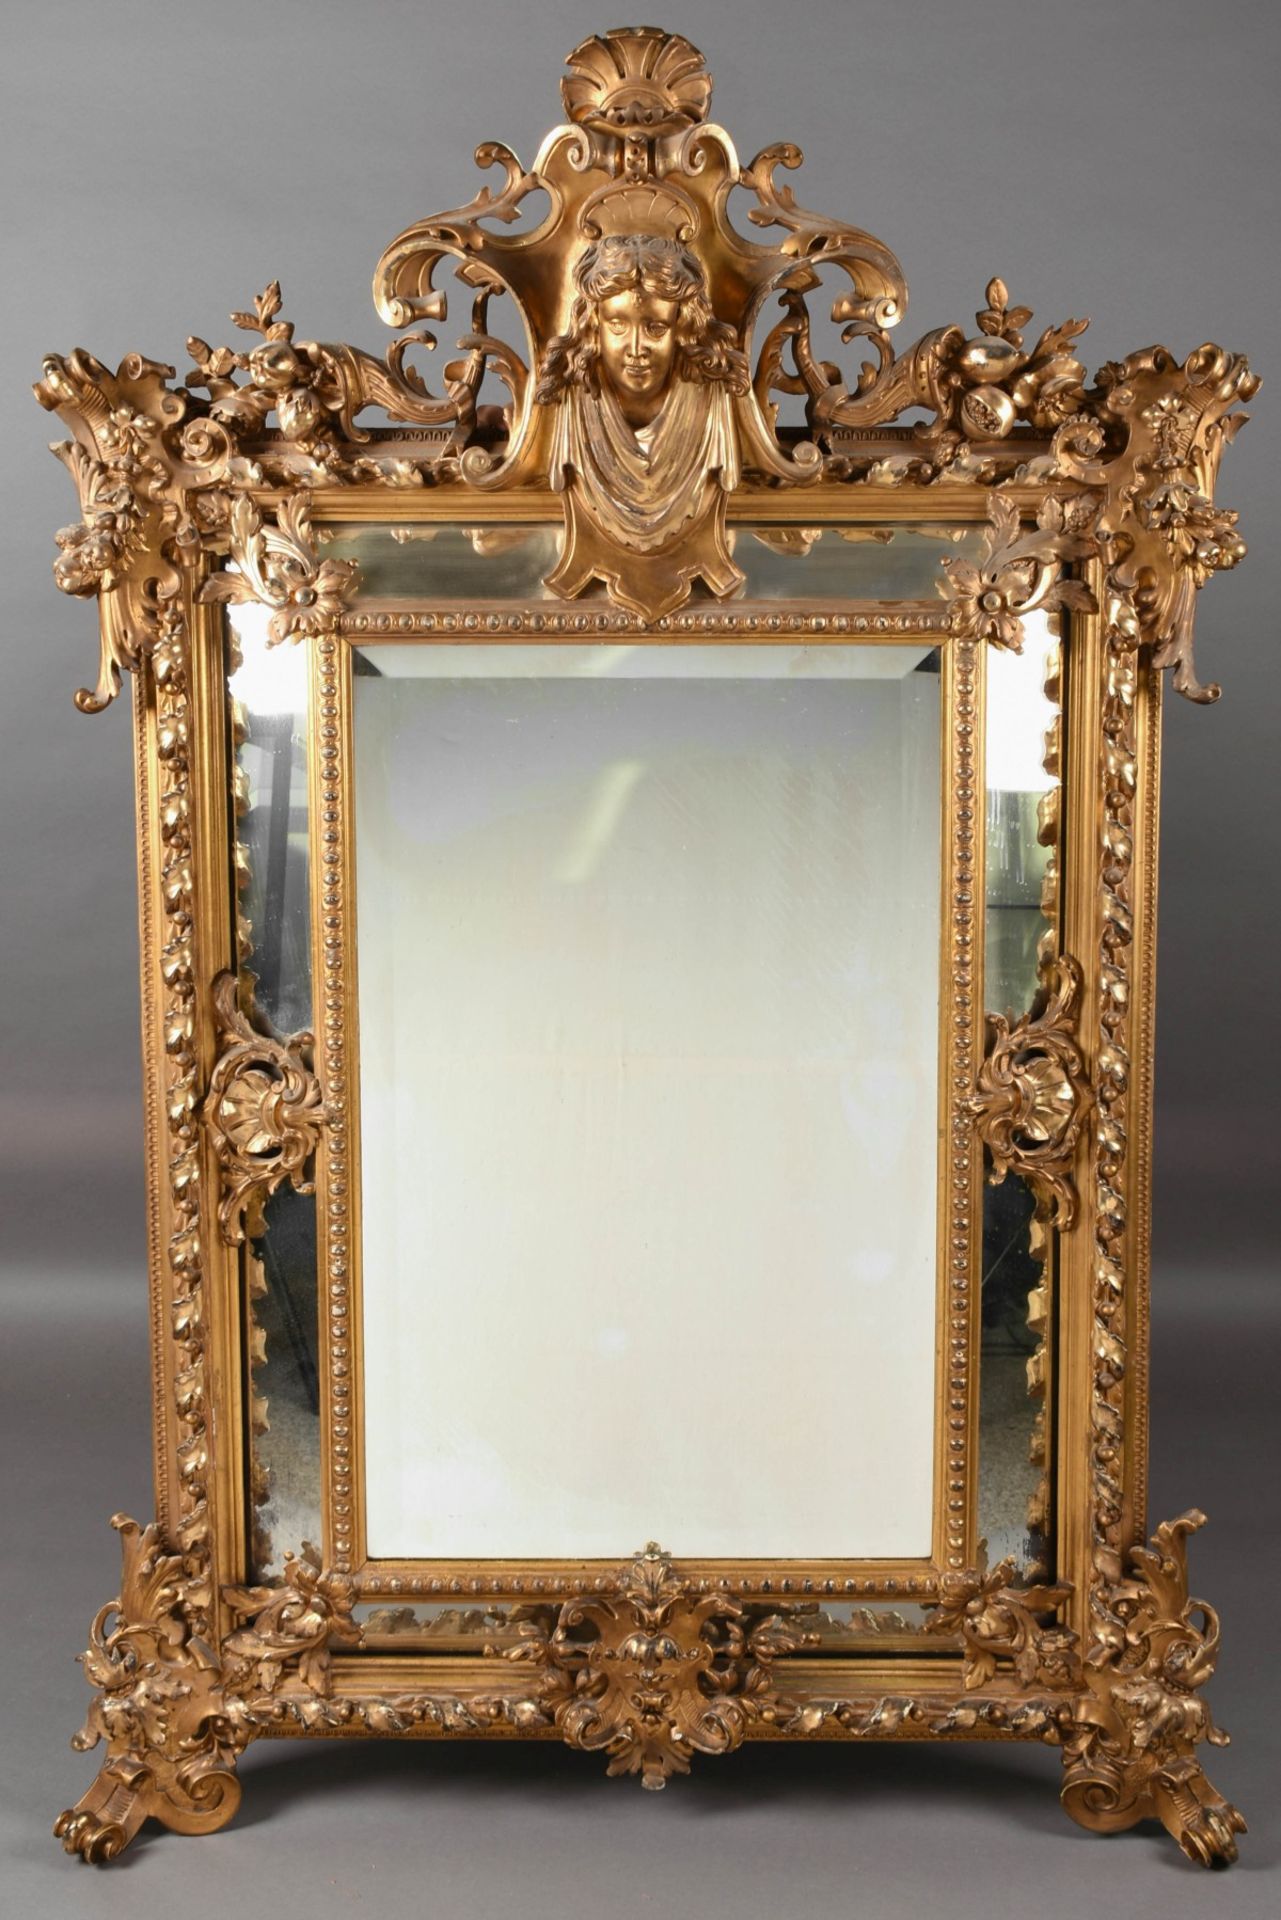 Prunkwandspiegel Holz geschnitzt und goldstuckiert, aufwendig gearbeiteter neobarocker Wandspiegel - Bild 2 aus 4